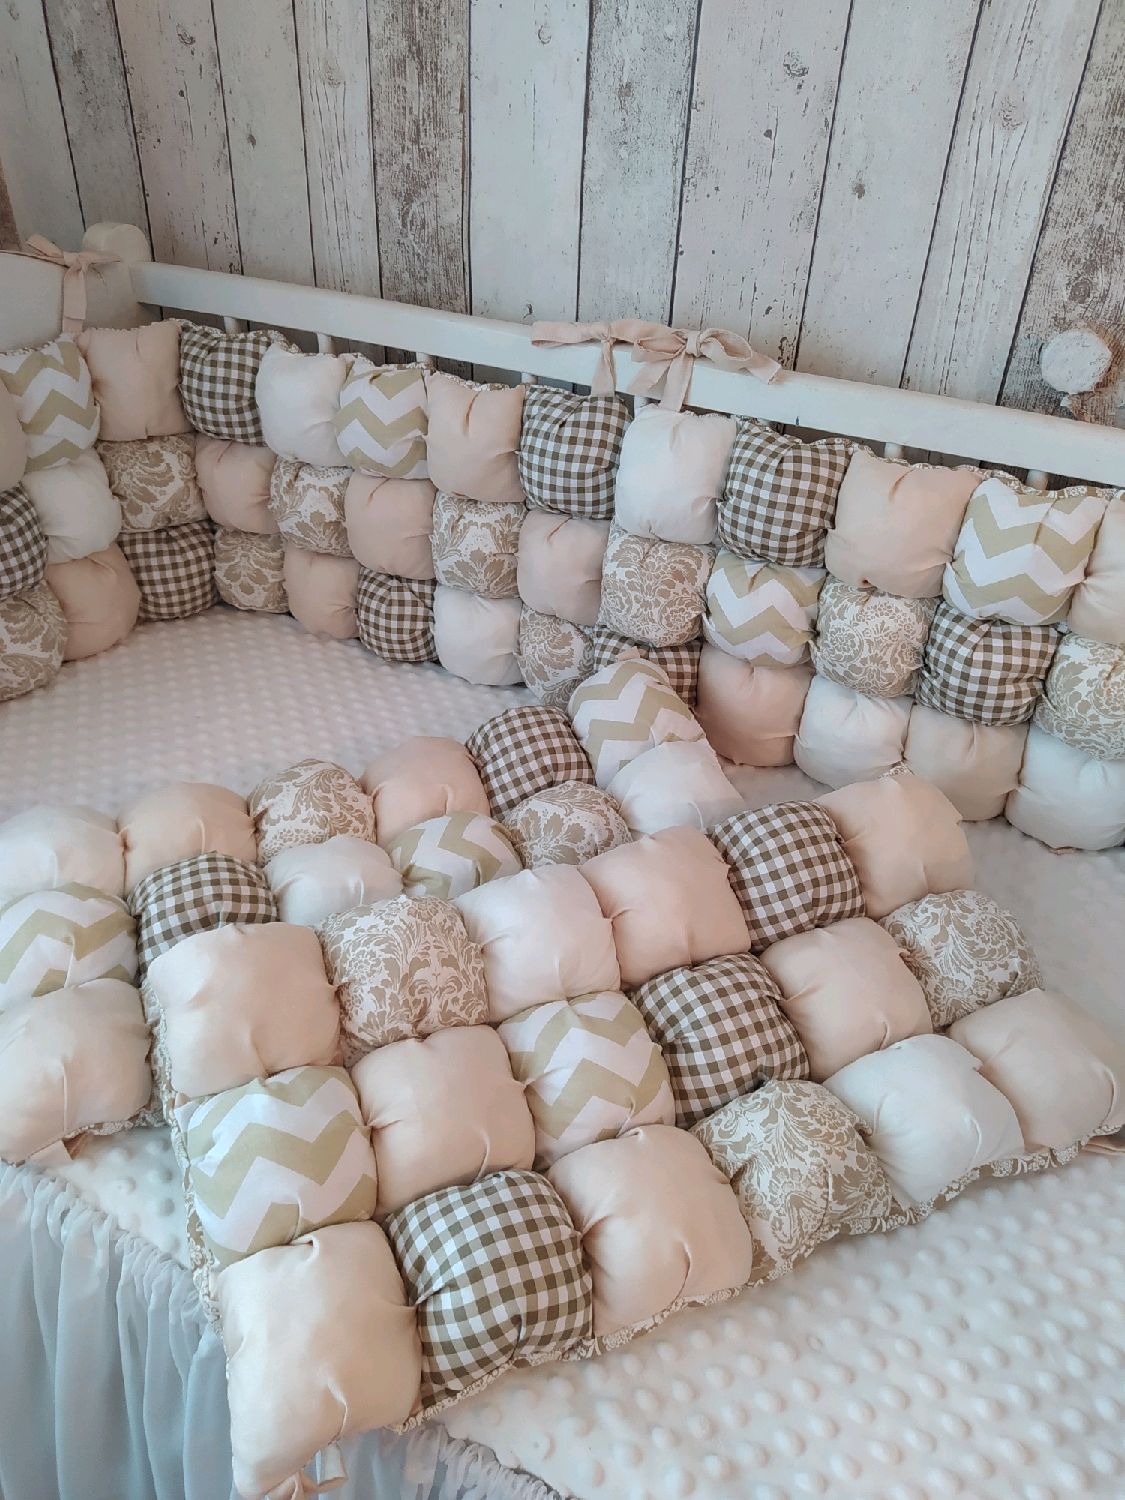 подушки на детскую кровать